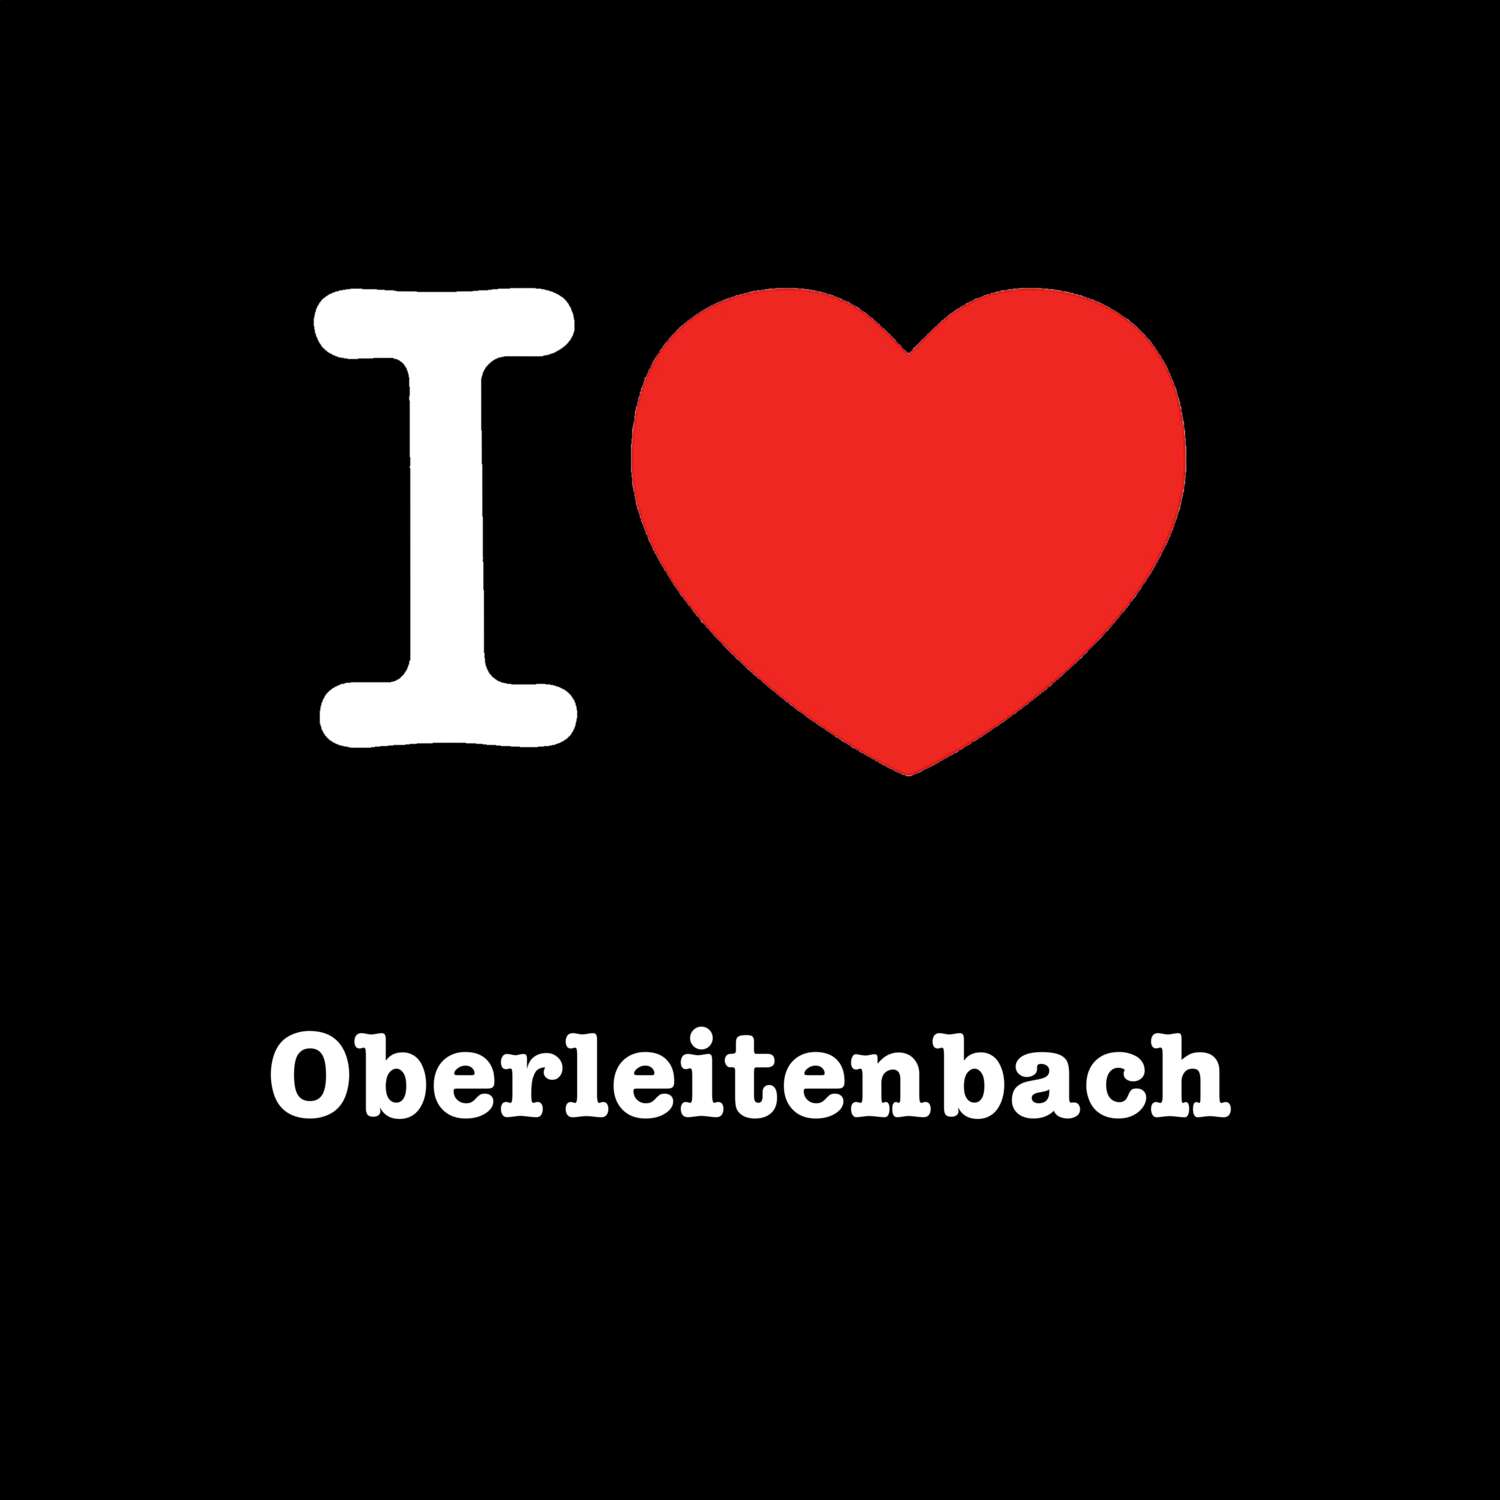 Oberleitenbach T-Shirt »I love«